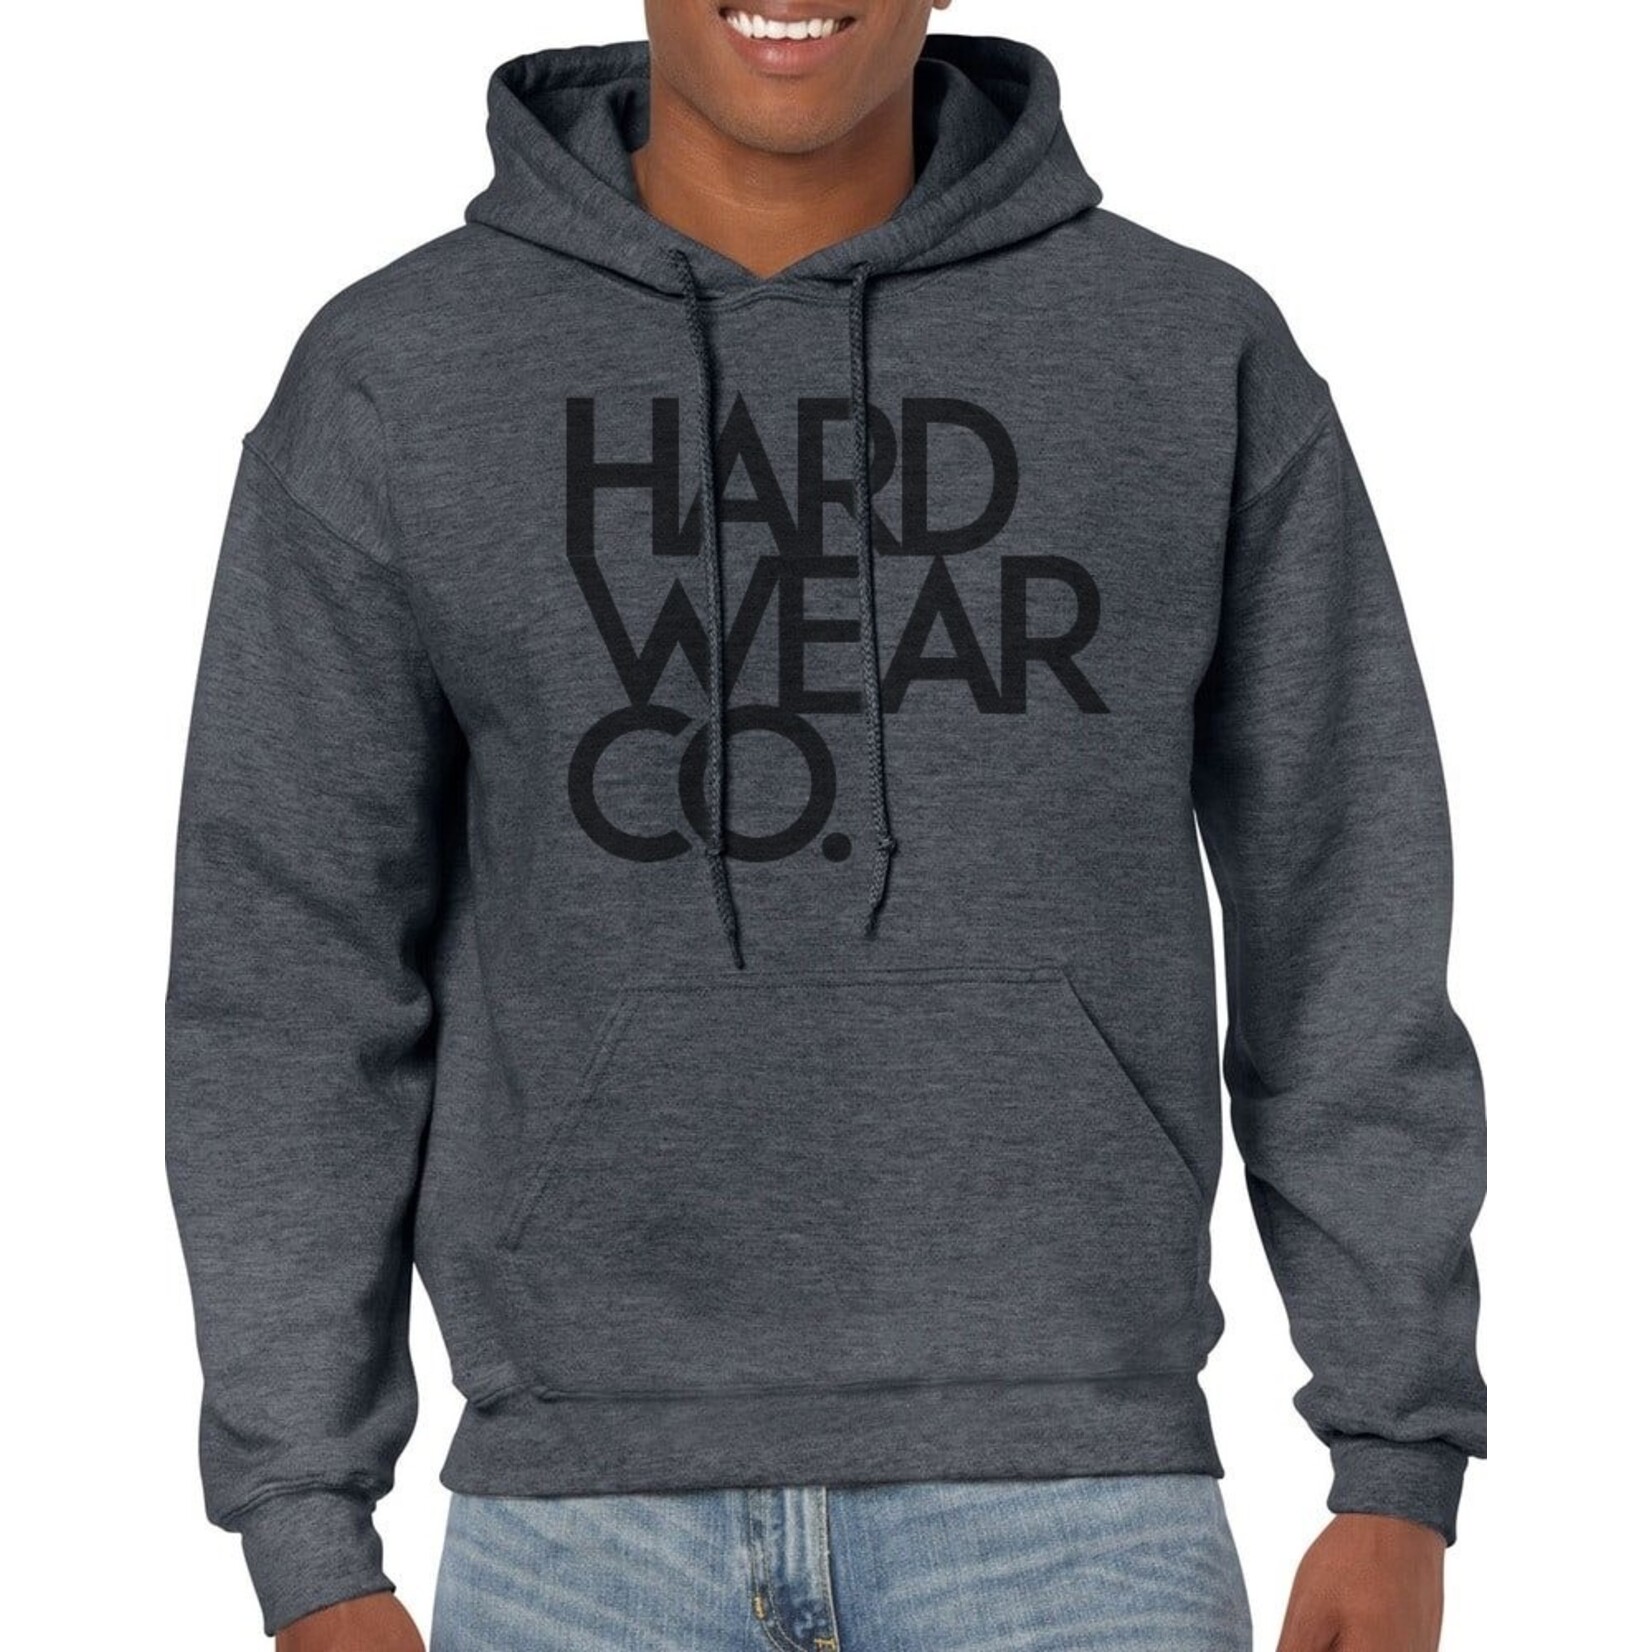 Hardwear Co Hardwear hoodies